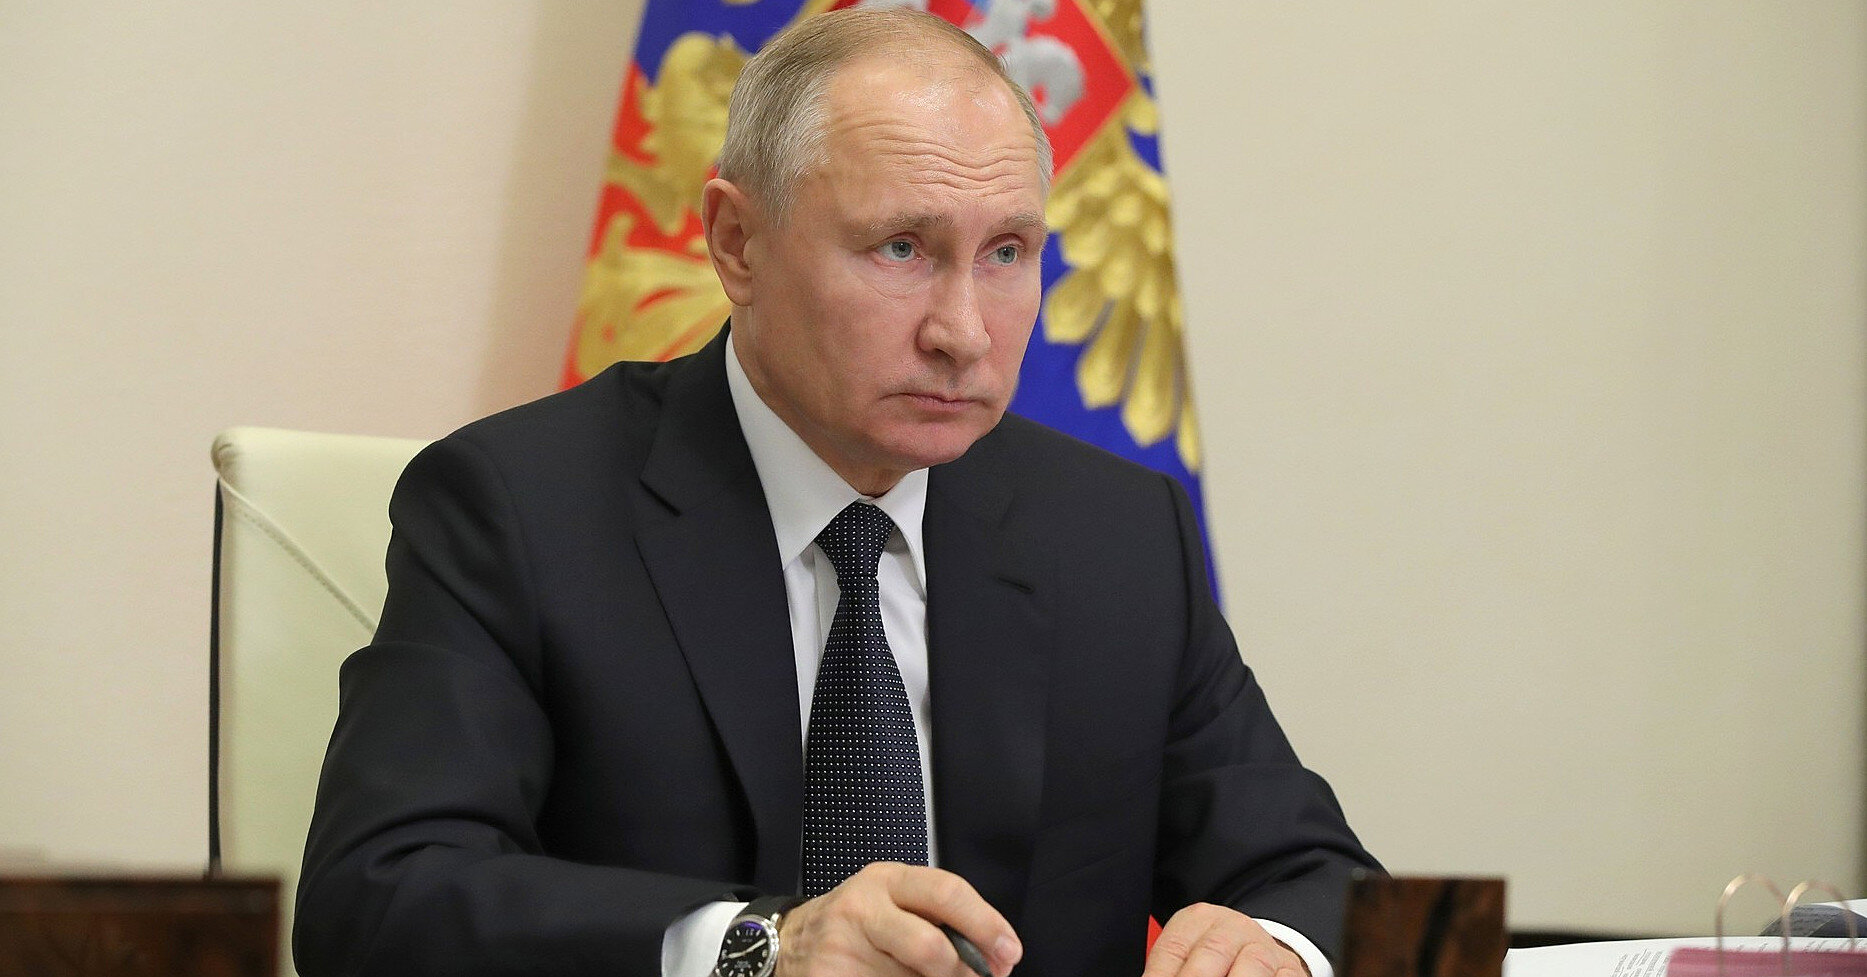 Боевики ИГИЛ обещают новый теракт в России и угрожают лично Путину